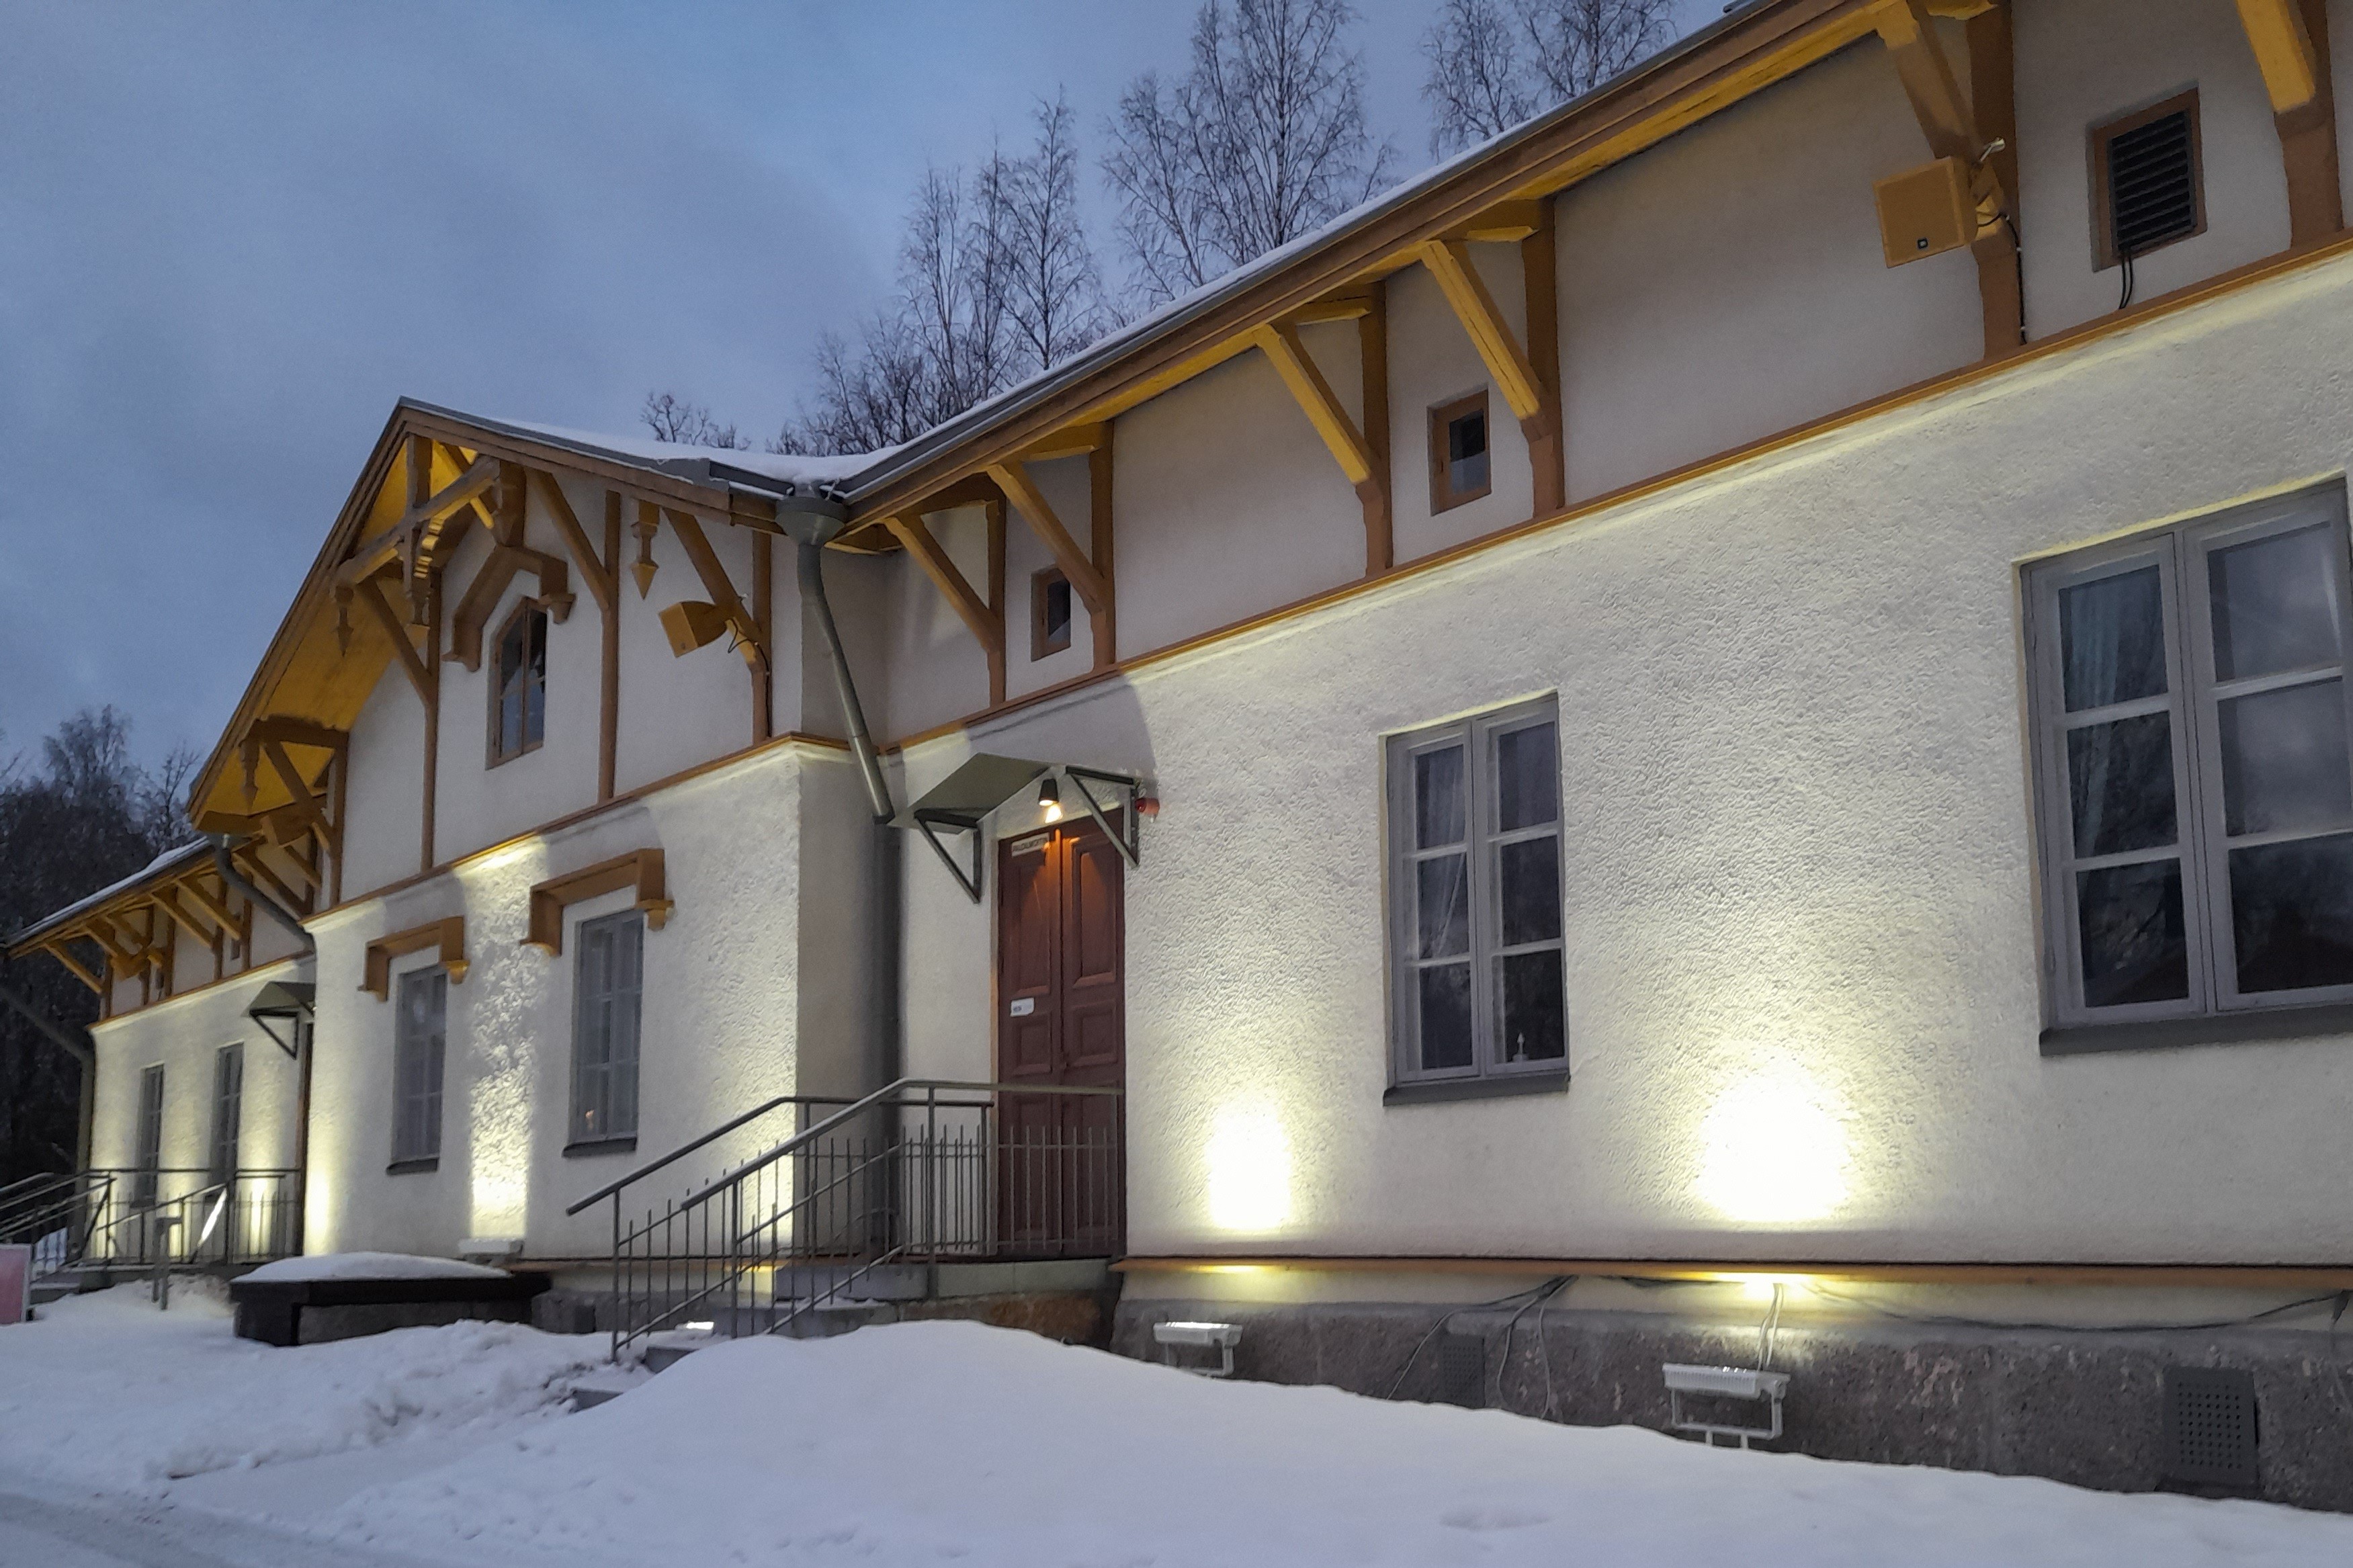 Kuvassa Lasten kulttuurikeskus Auroran julkisivu kuvattuna talvi-iltana. Talon julkisivu on valaistu, taivas on pilvinen ja maassa on lunta.